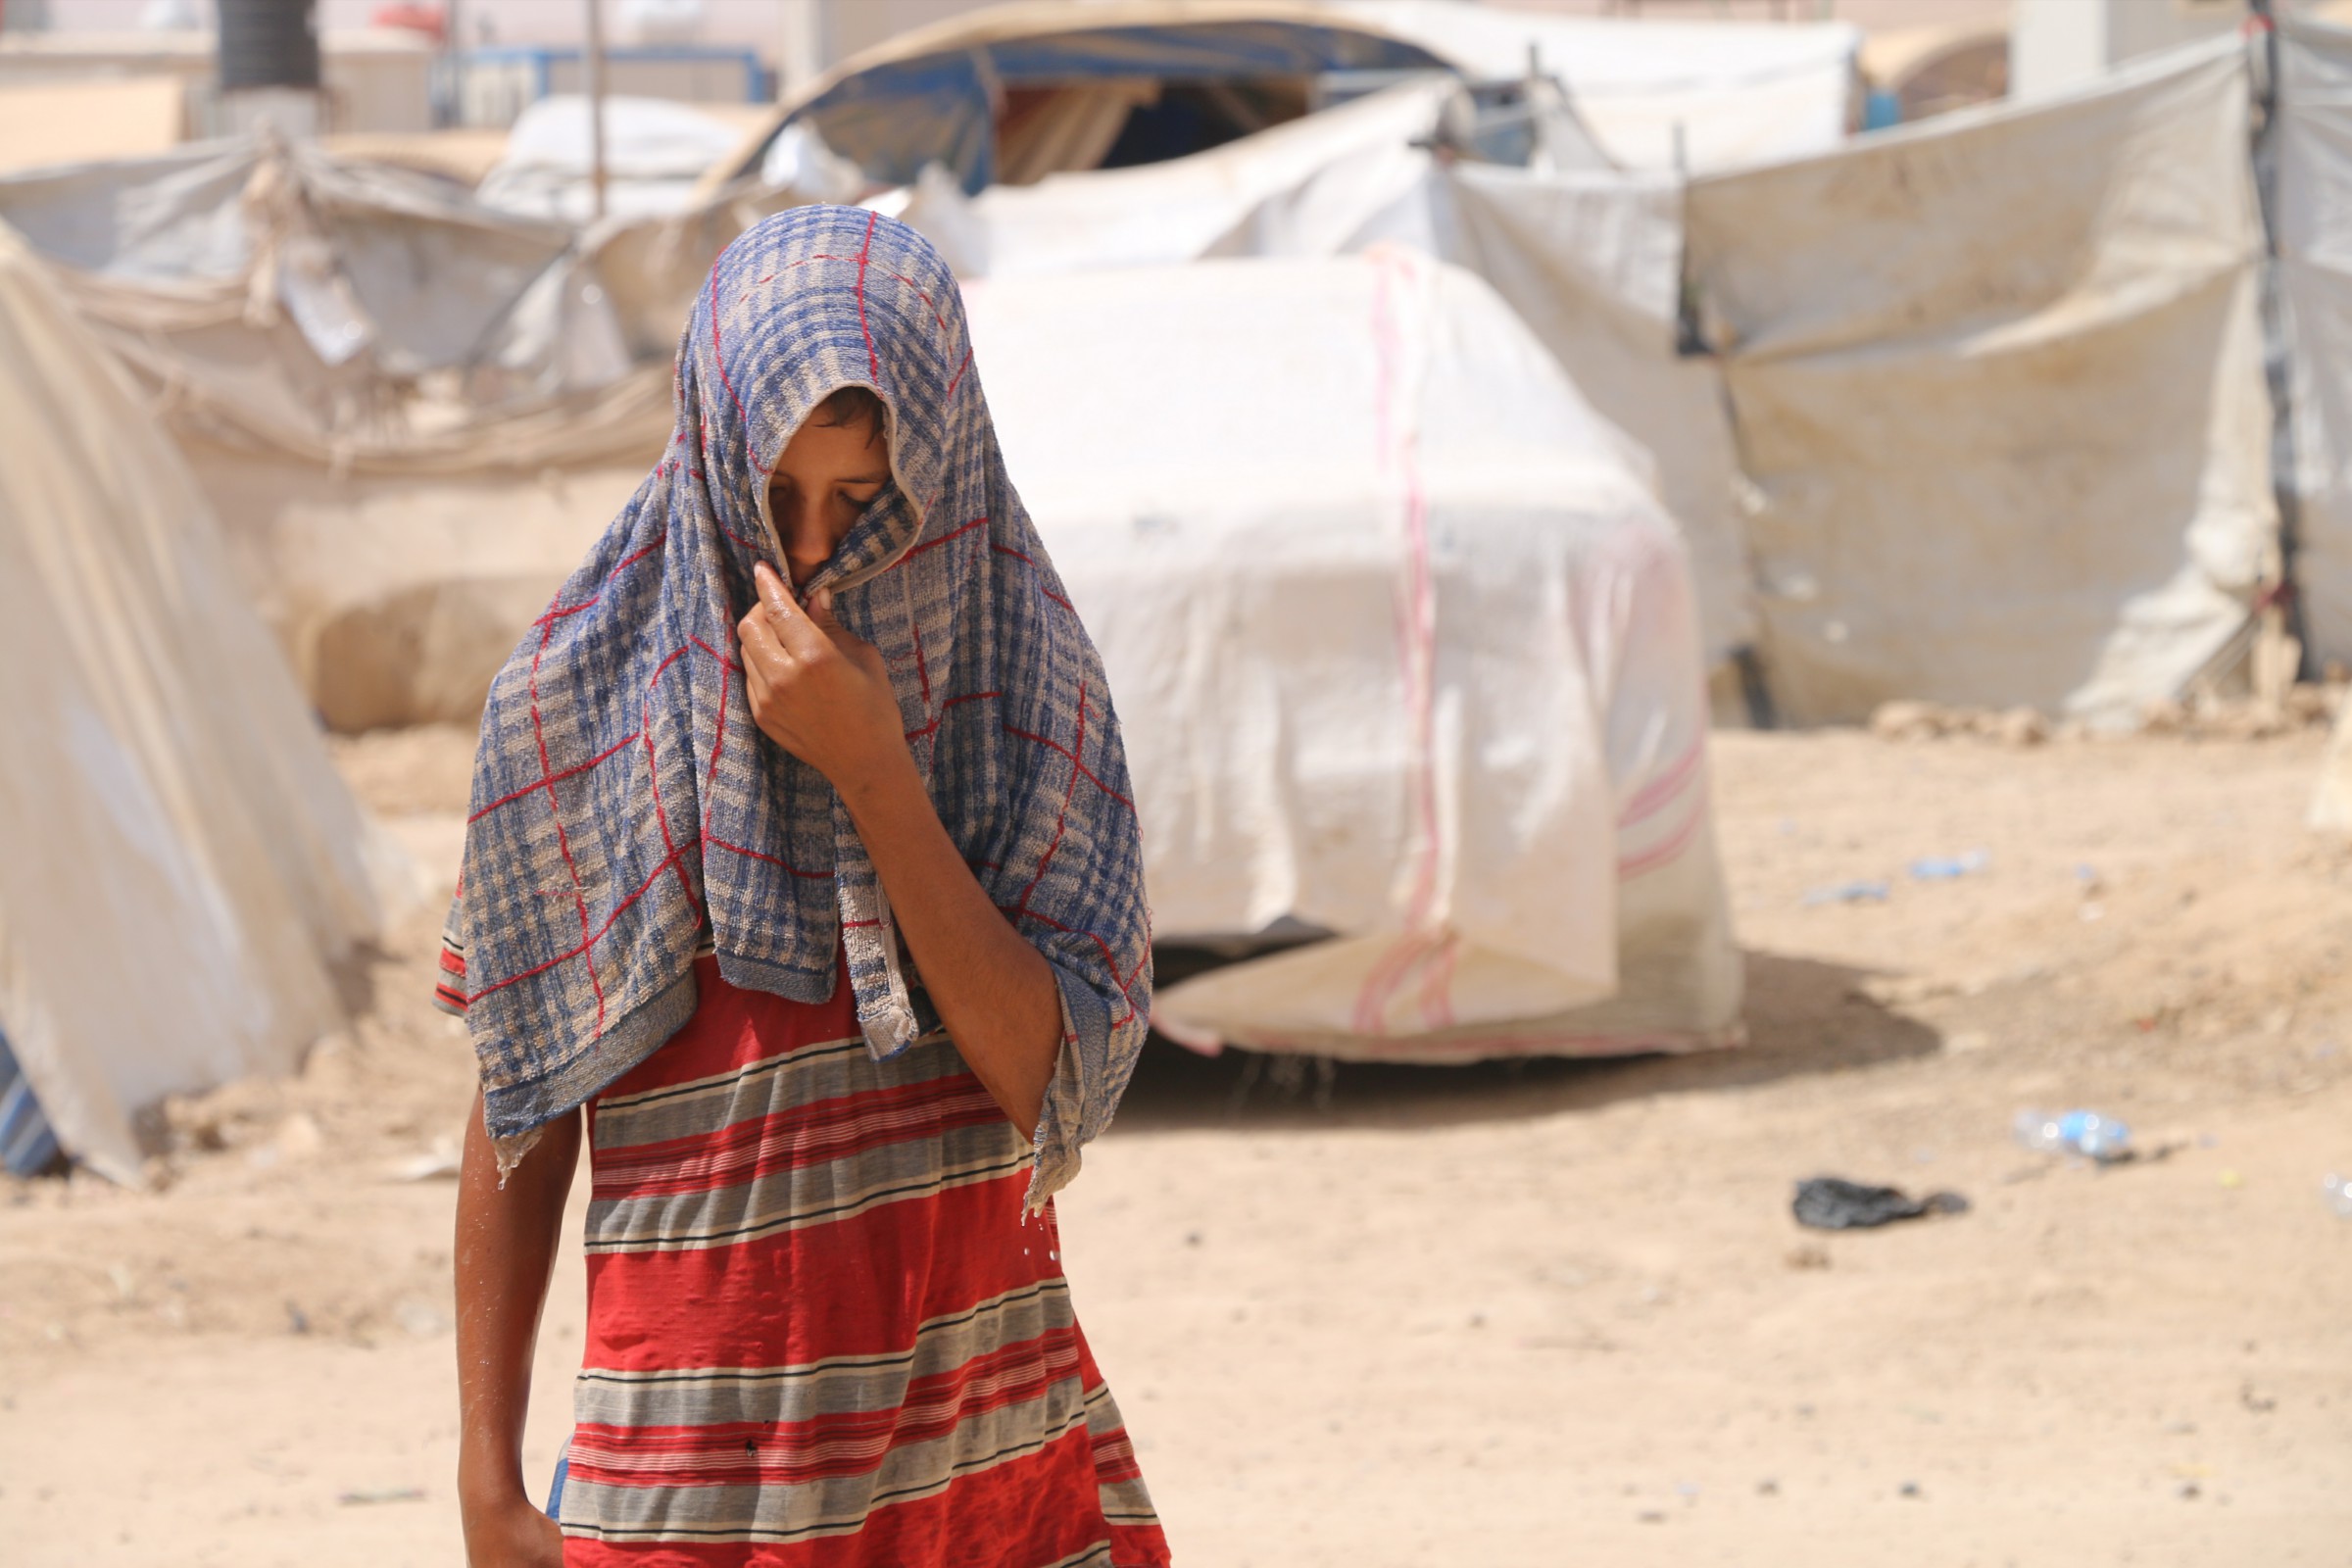 اغلاق مخيم “الـ60 كيلو” غرب الرمادي ونقل النازحين الى مخيم آخر